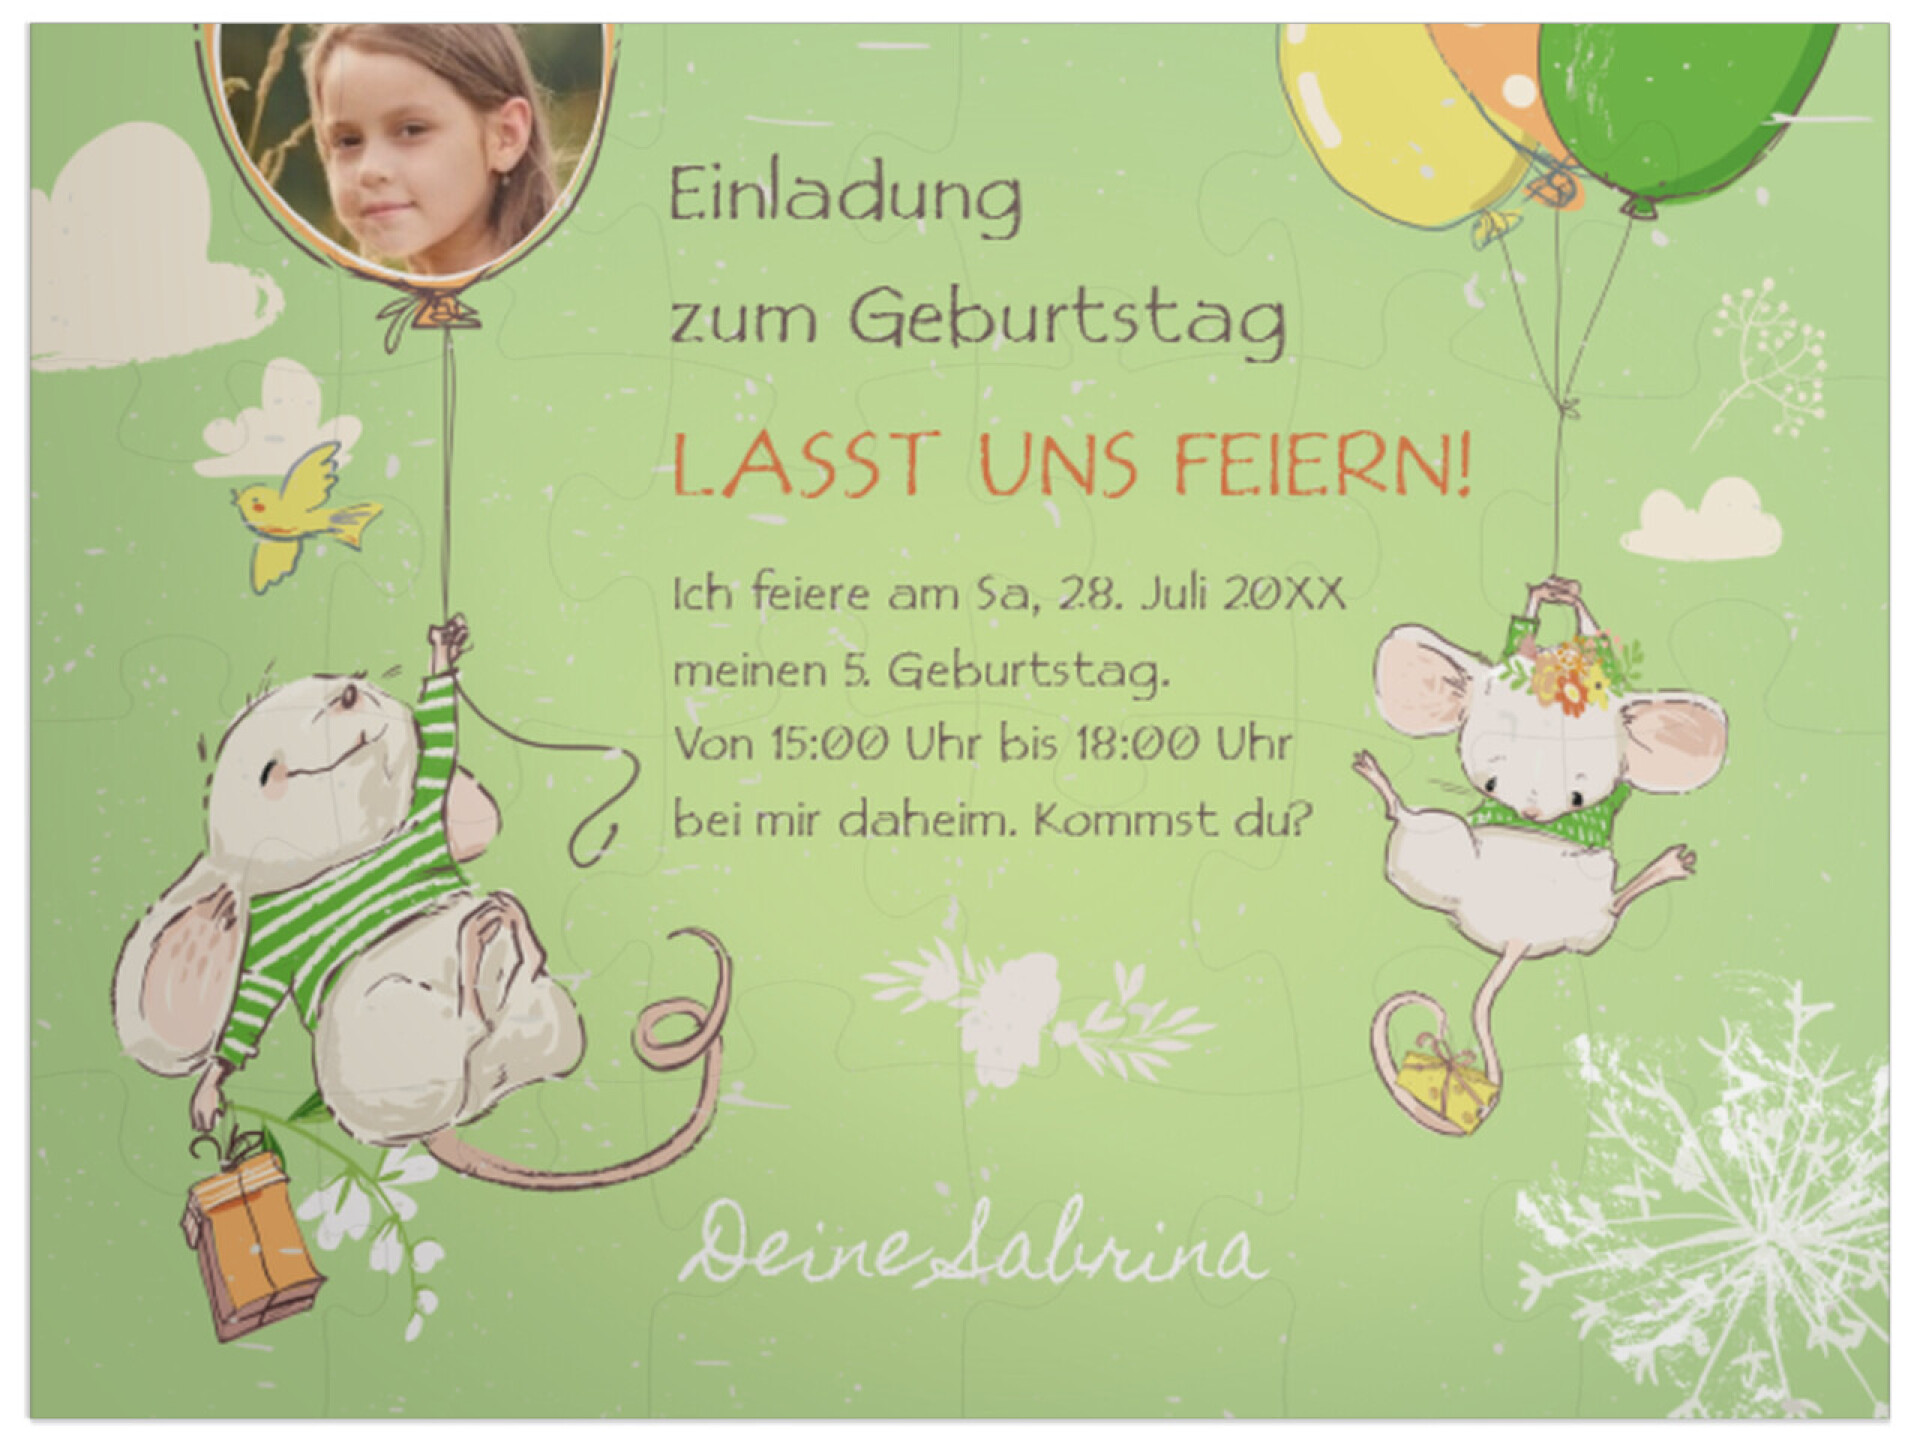 "Party-Mäuse" in Querformat pastellgrün